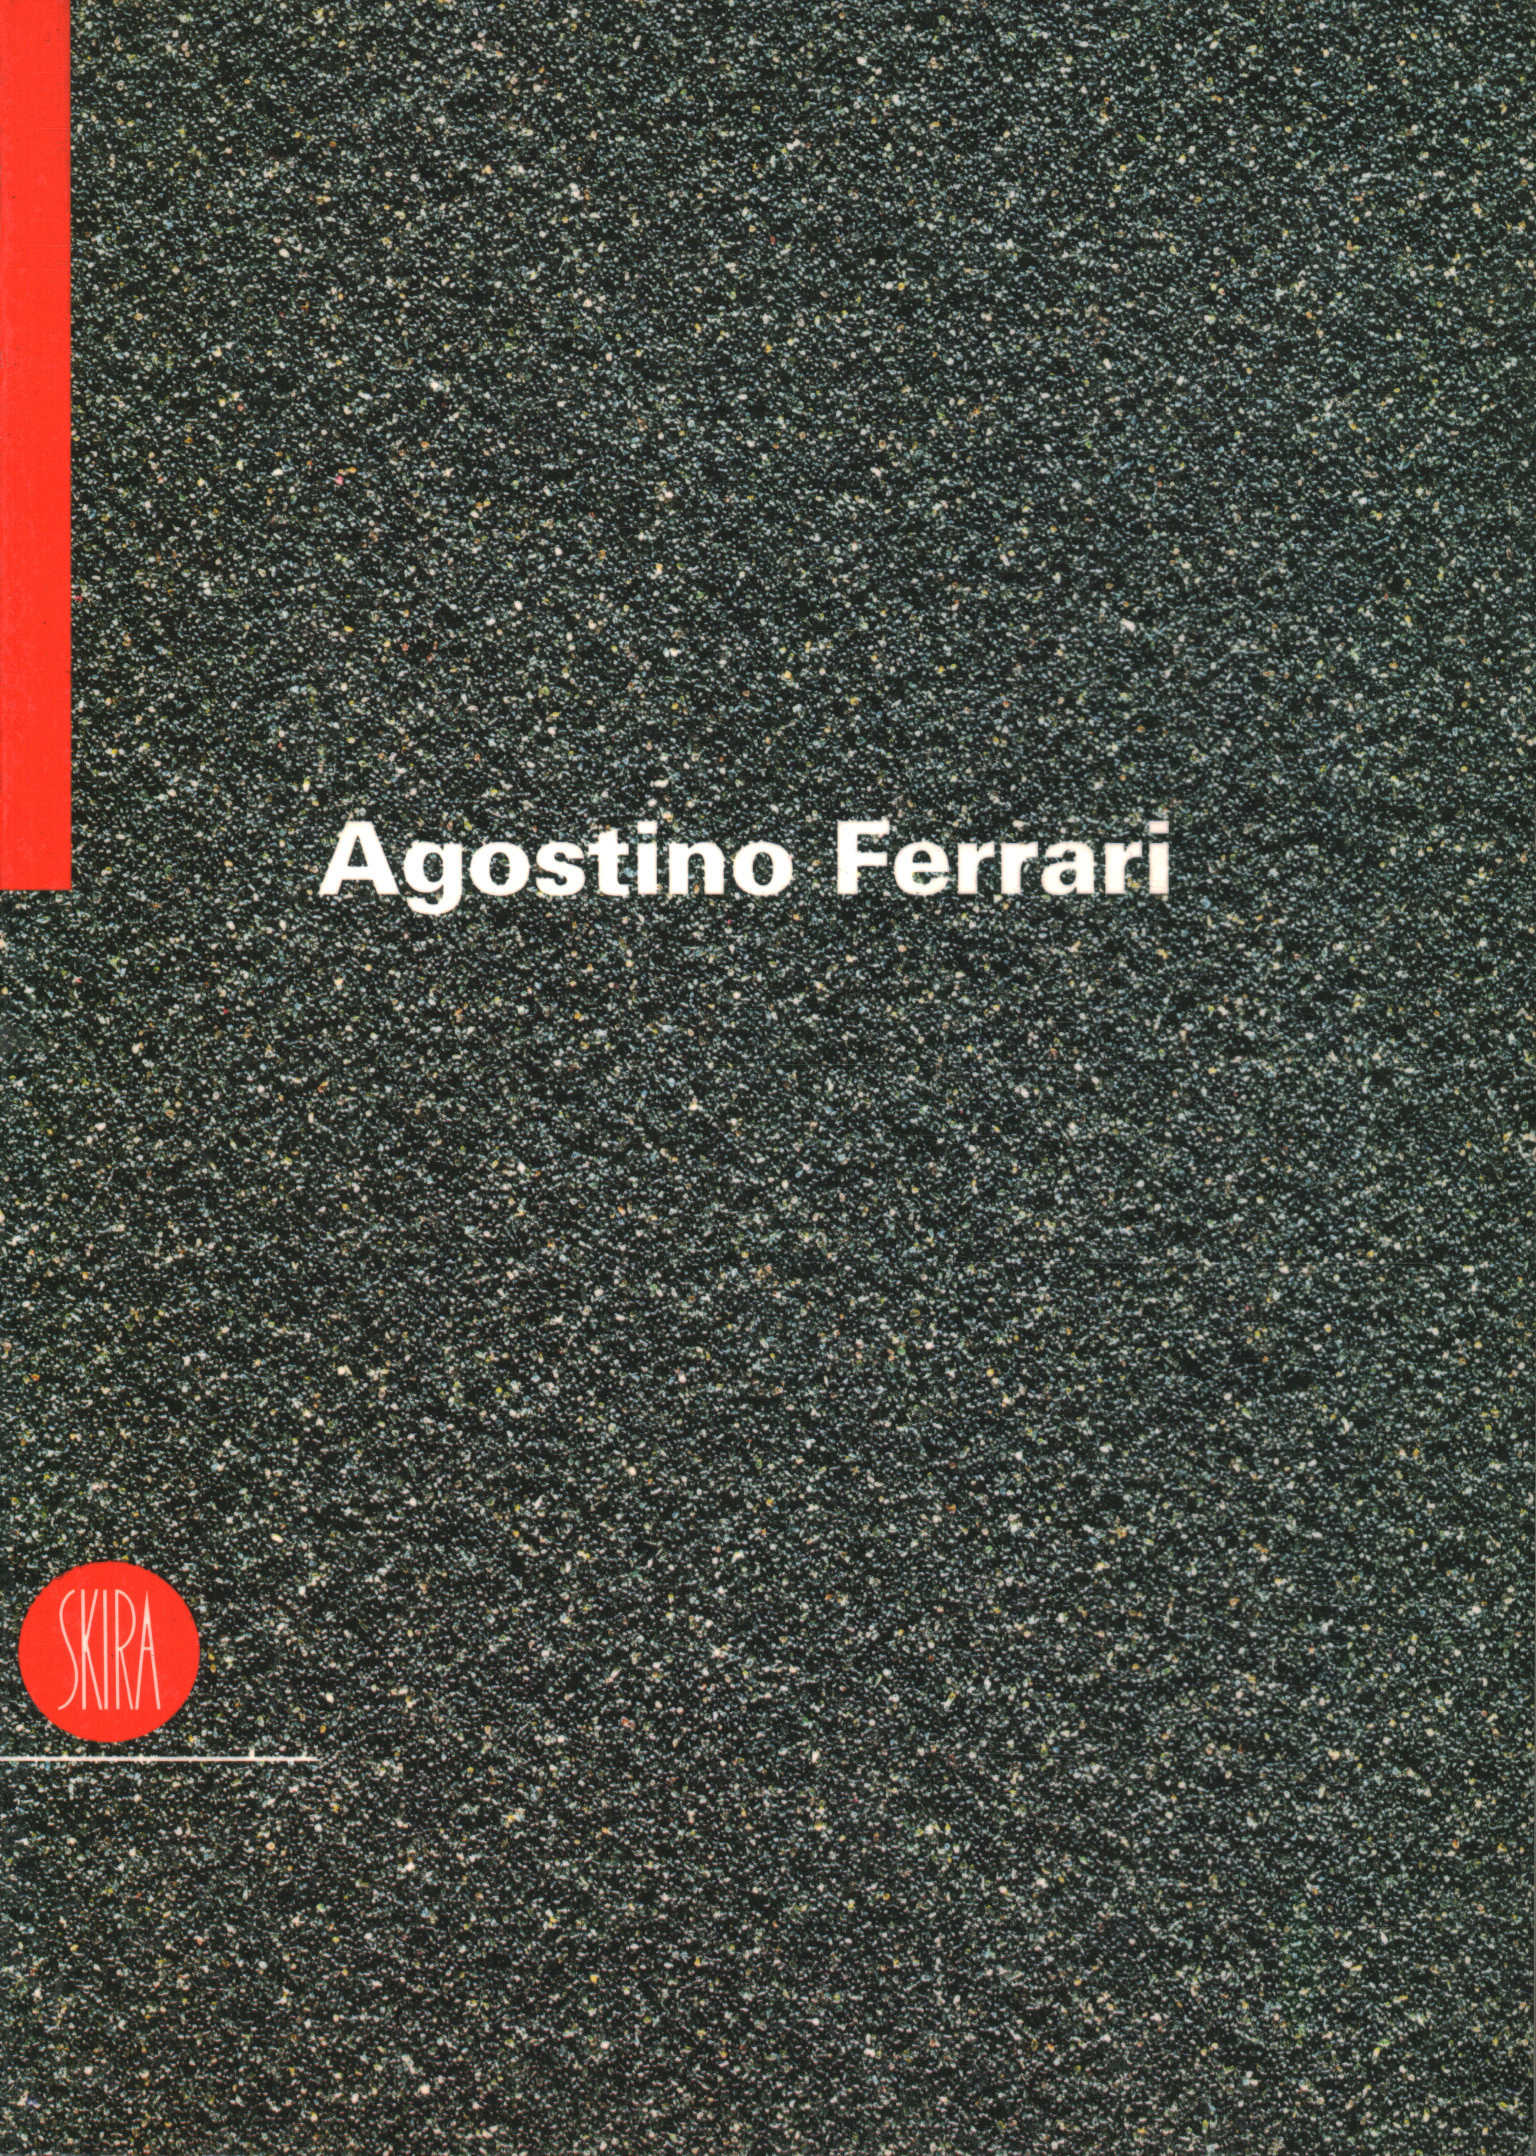 Agostino Ferrari. Fragments